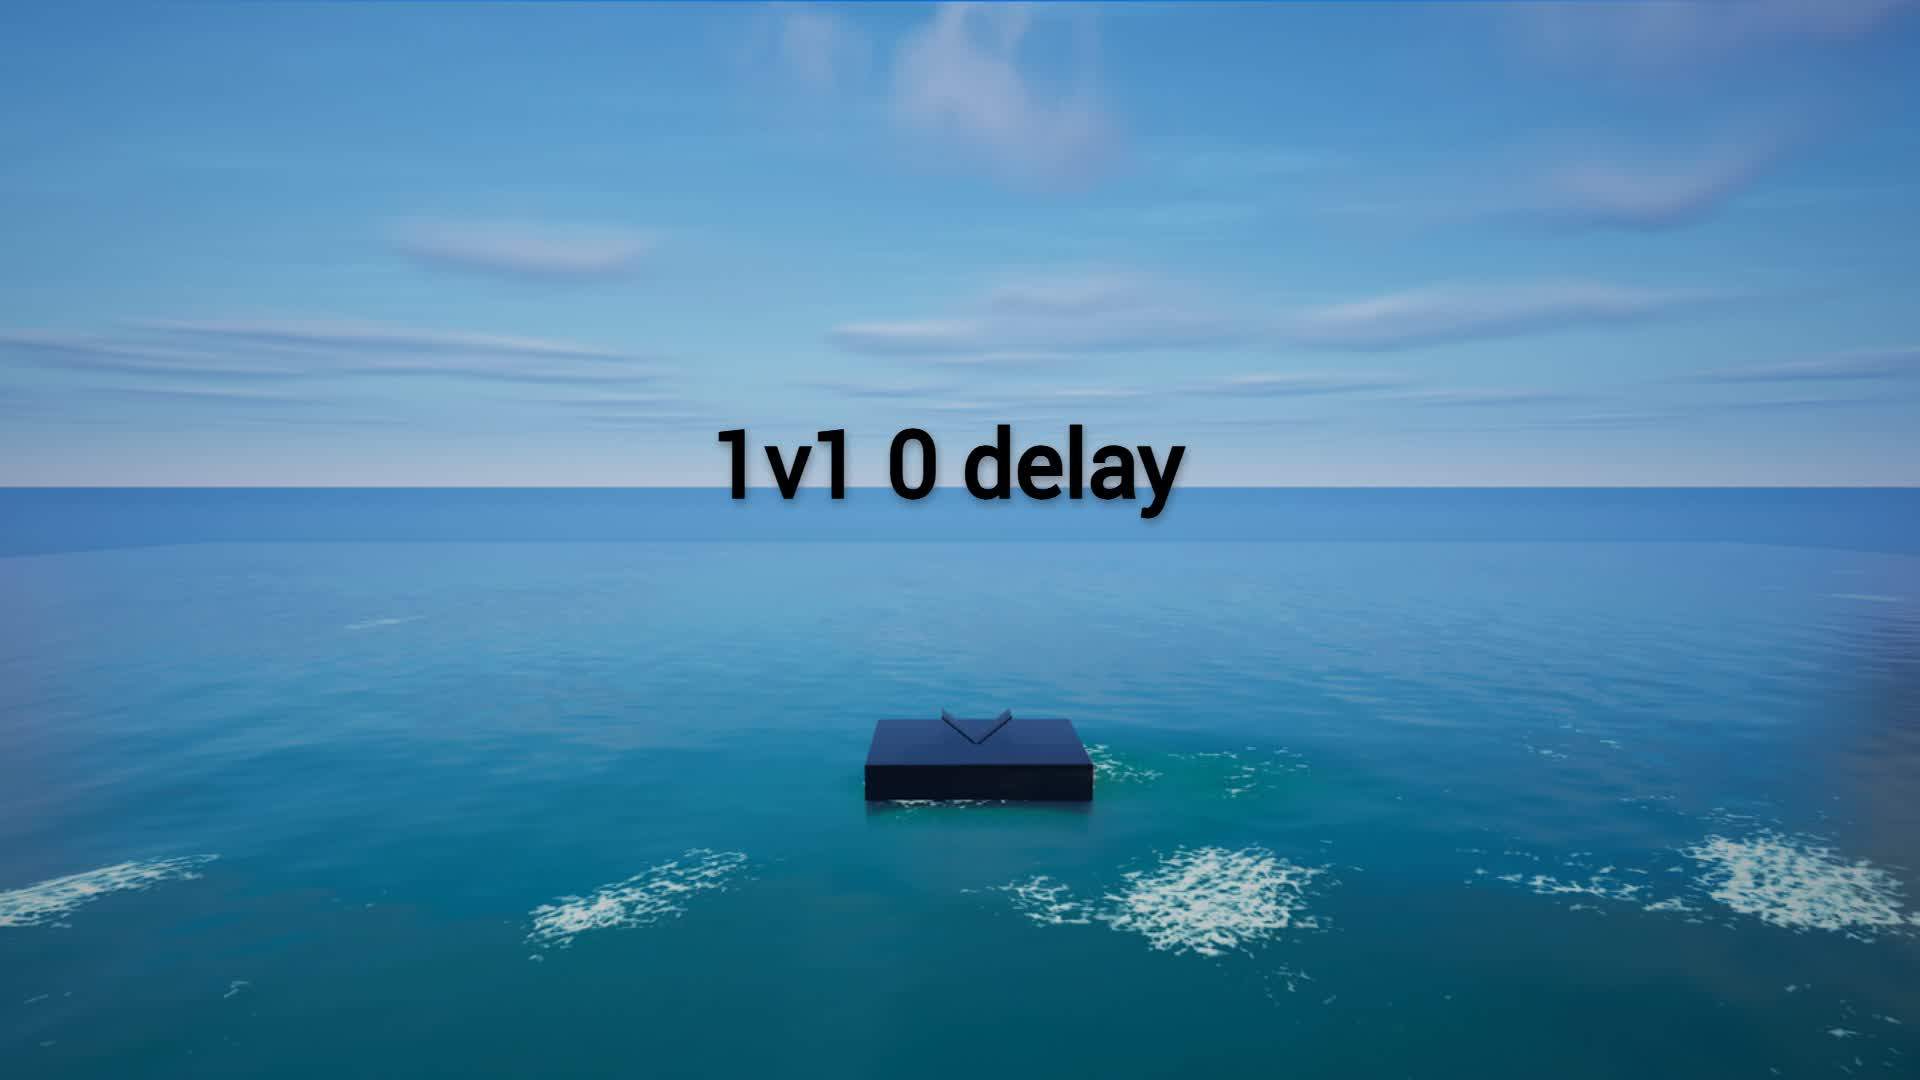 1v1 0 delay